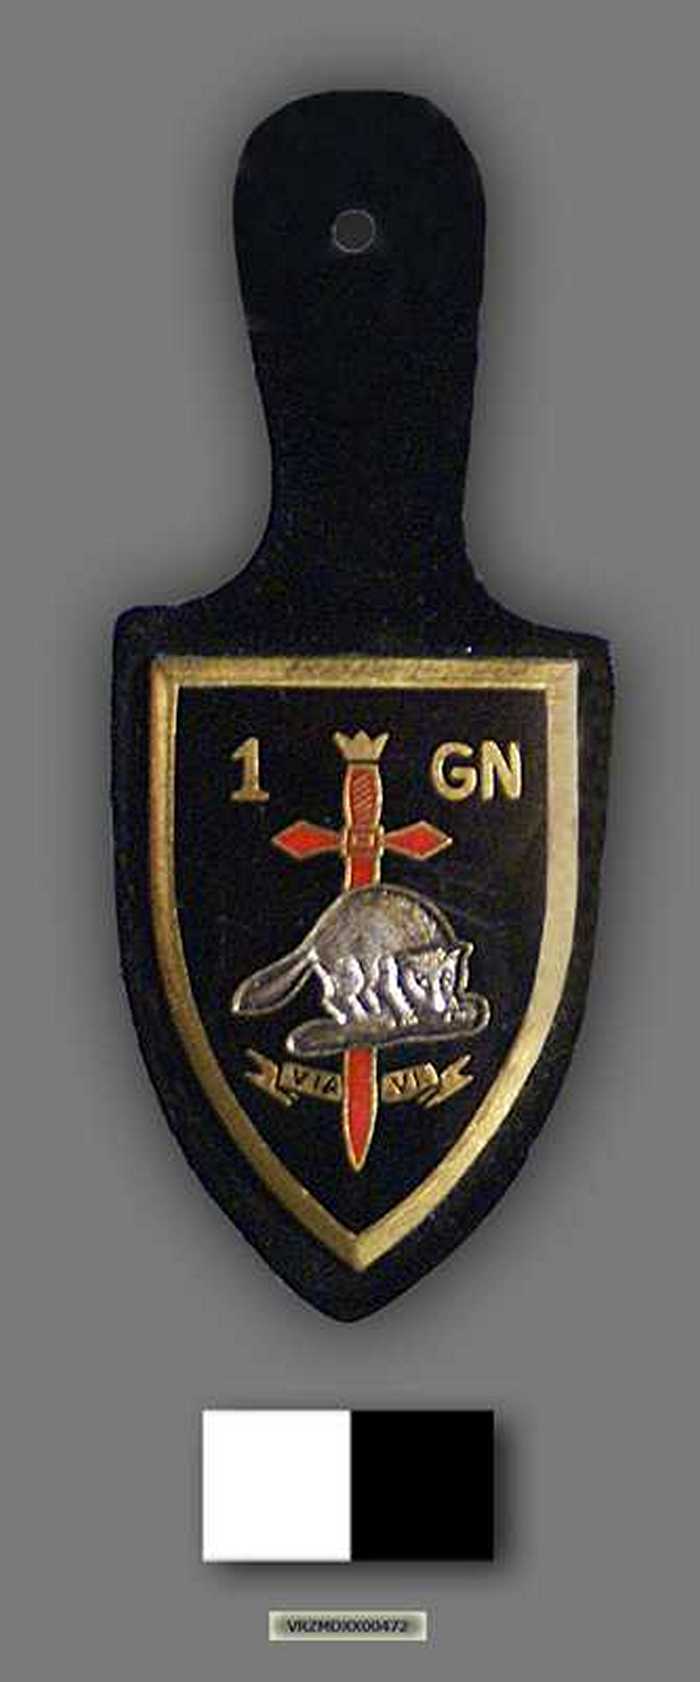 Badge van de Genietroepen